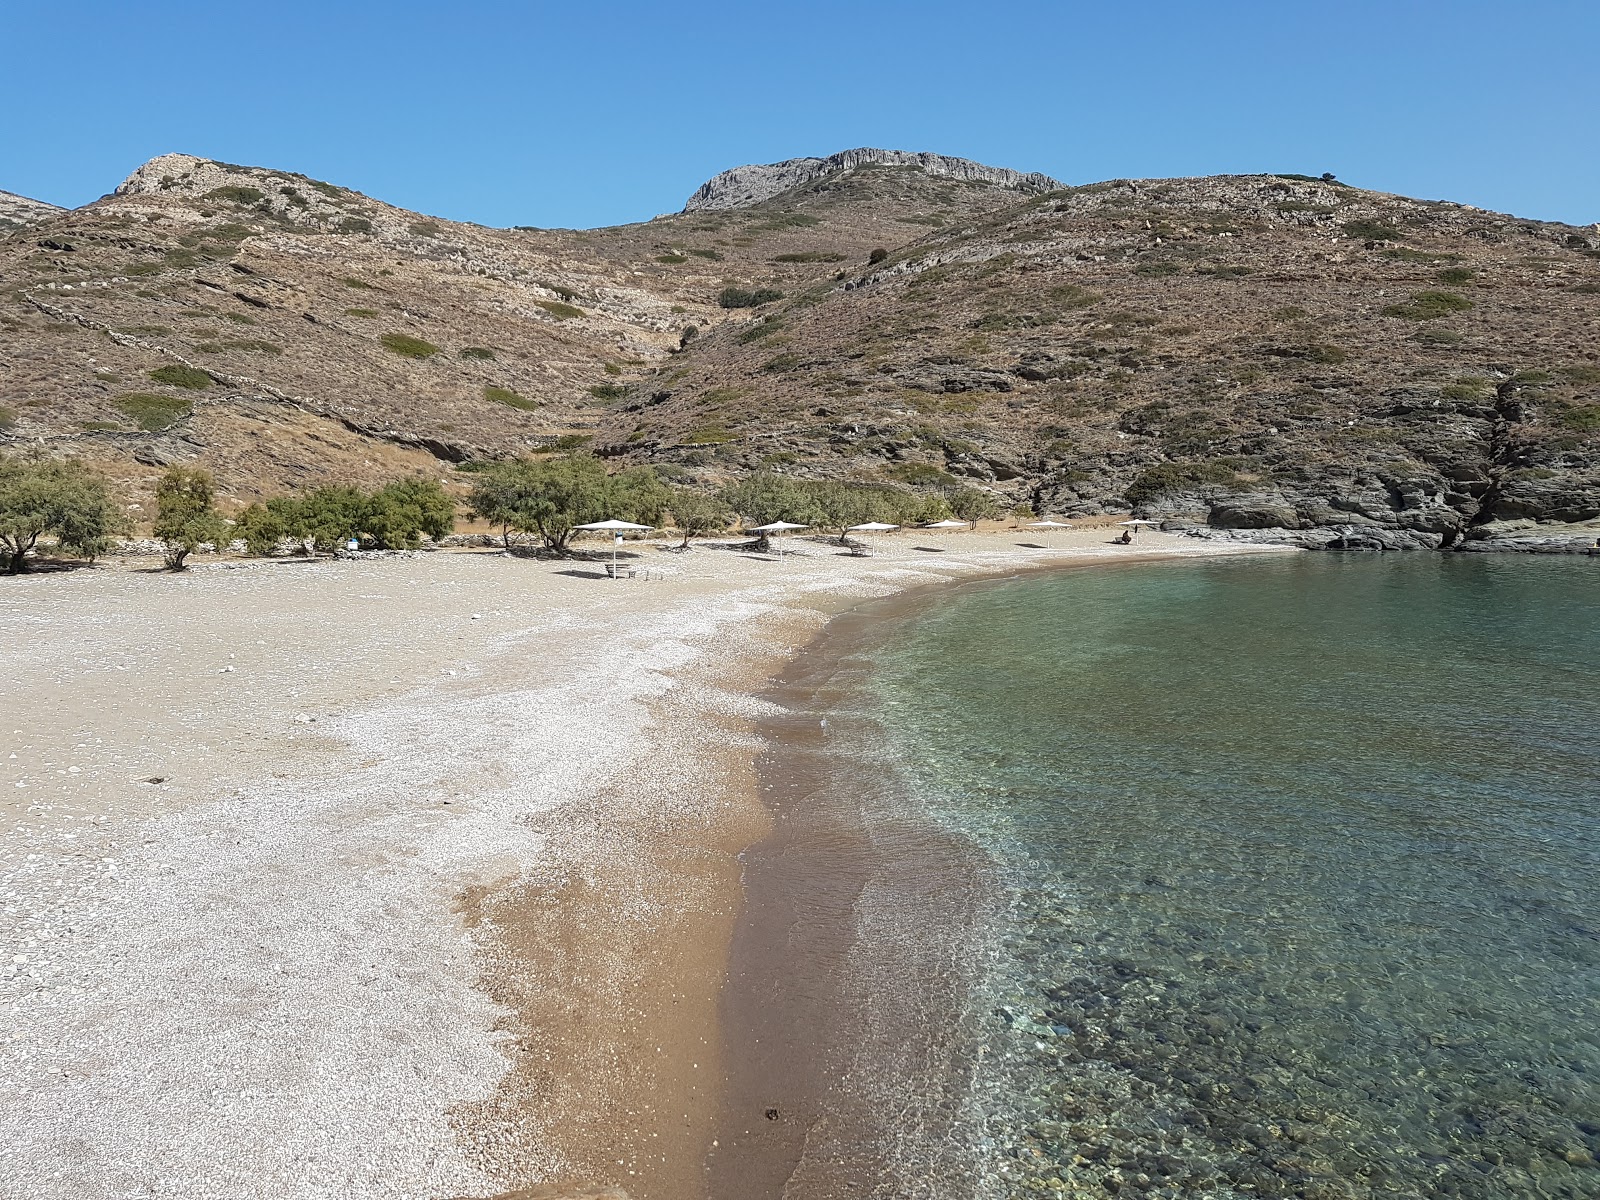 Agios Georgios'in fotoğrafı siyah kum ve çakıl yüzey ile